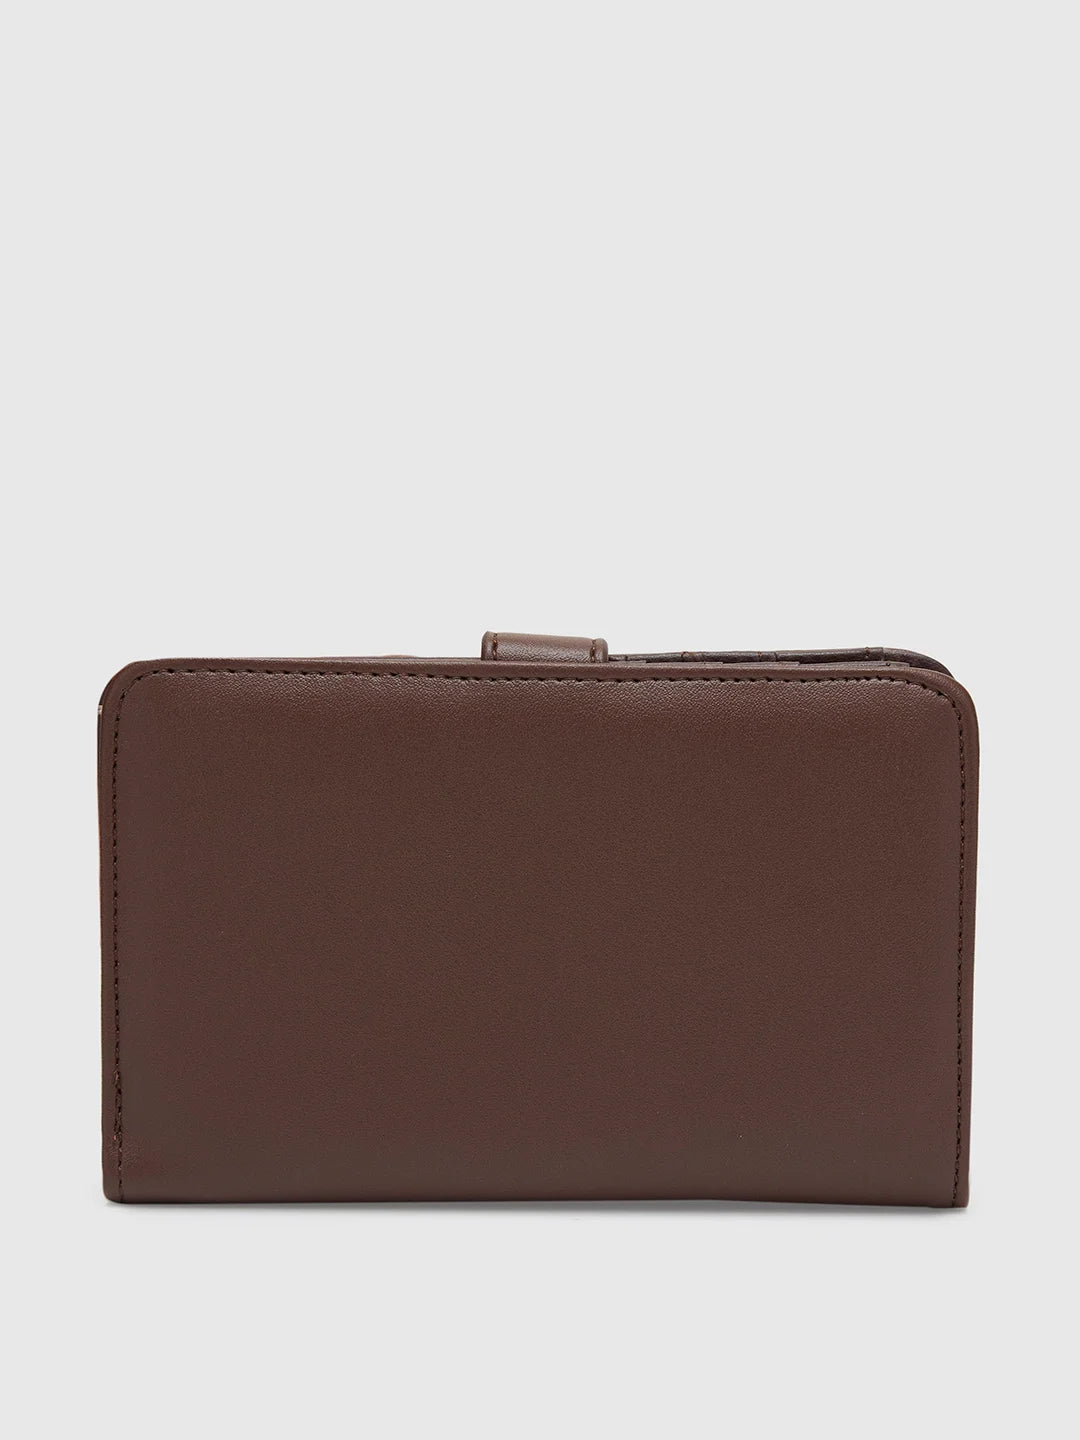 Kiko Leather Men's Trifold Leather Wallet